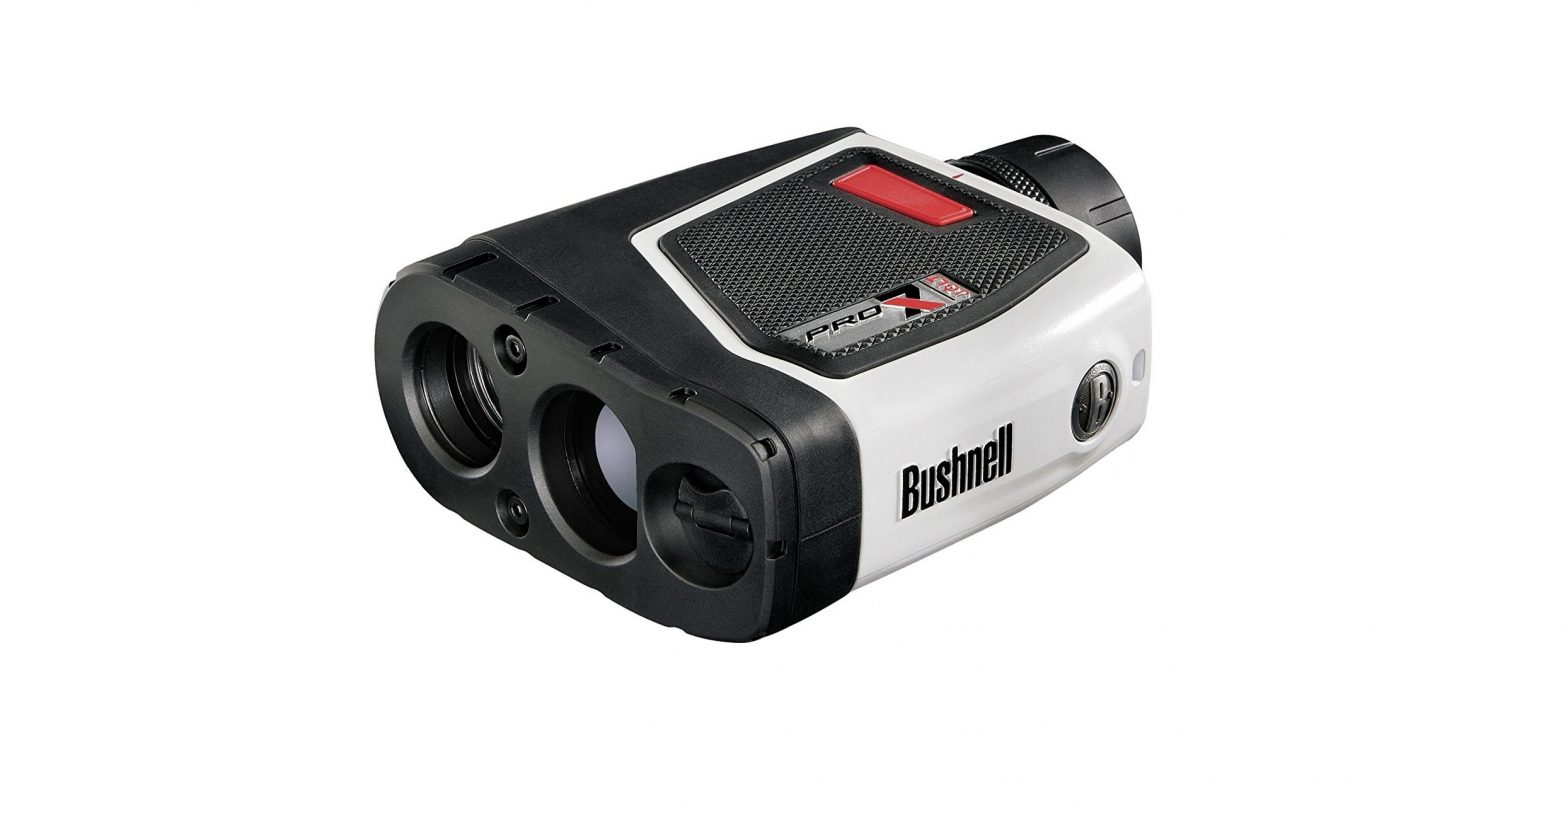 Bushnell 201400 Pro X7 Jolt Laser Rangefinder User Manual